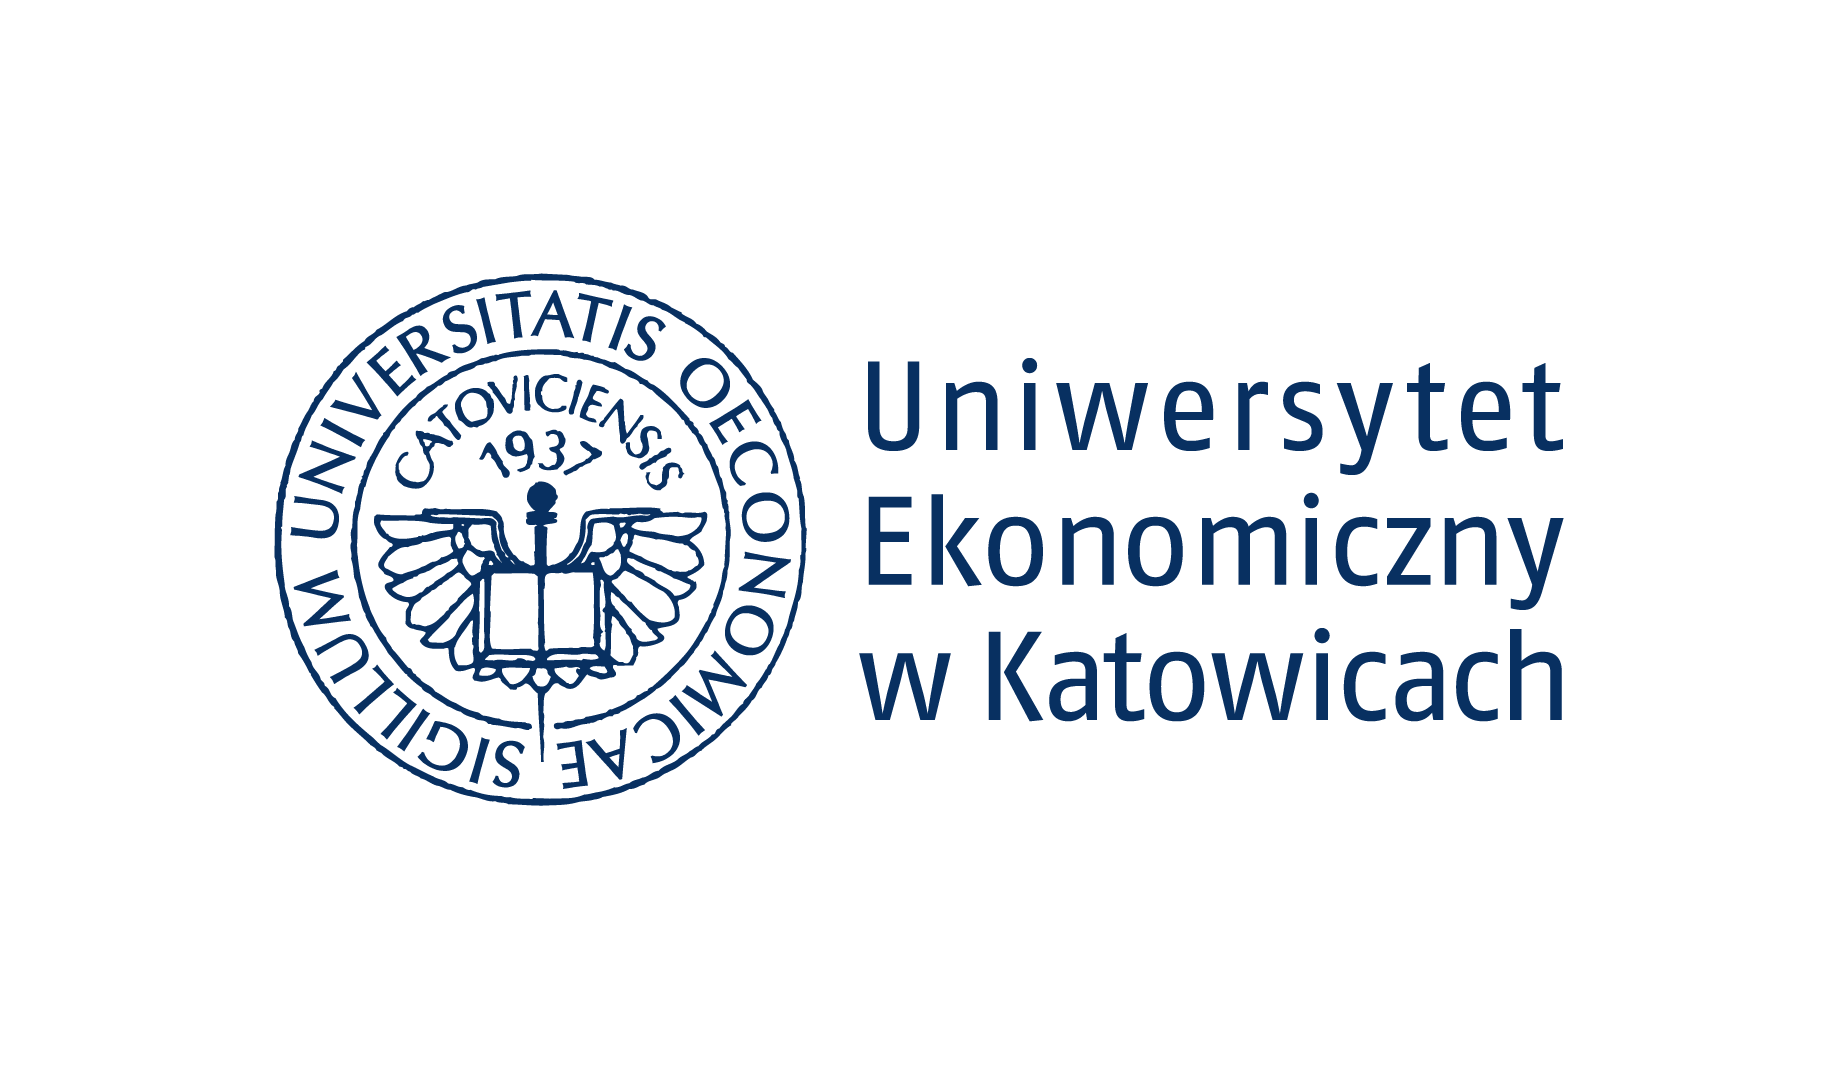 Uniwersytet Ekonomiczny w Katowicach (UE) logo